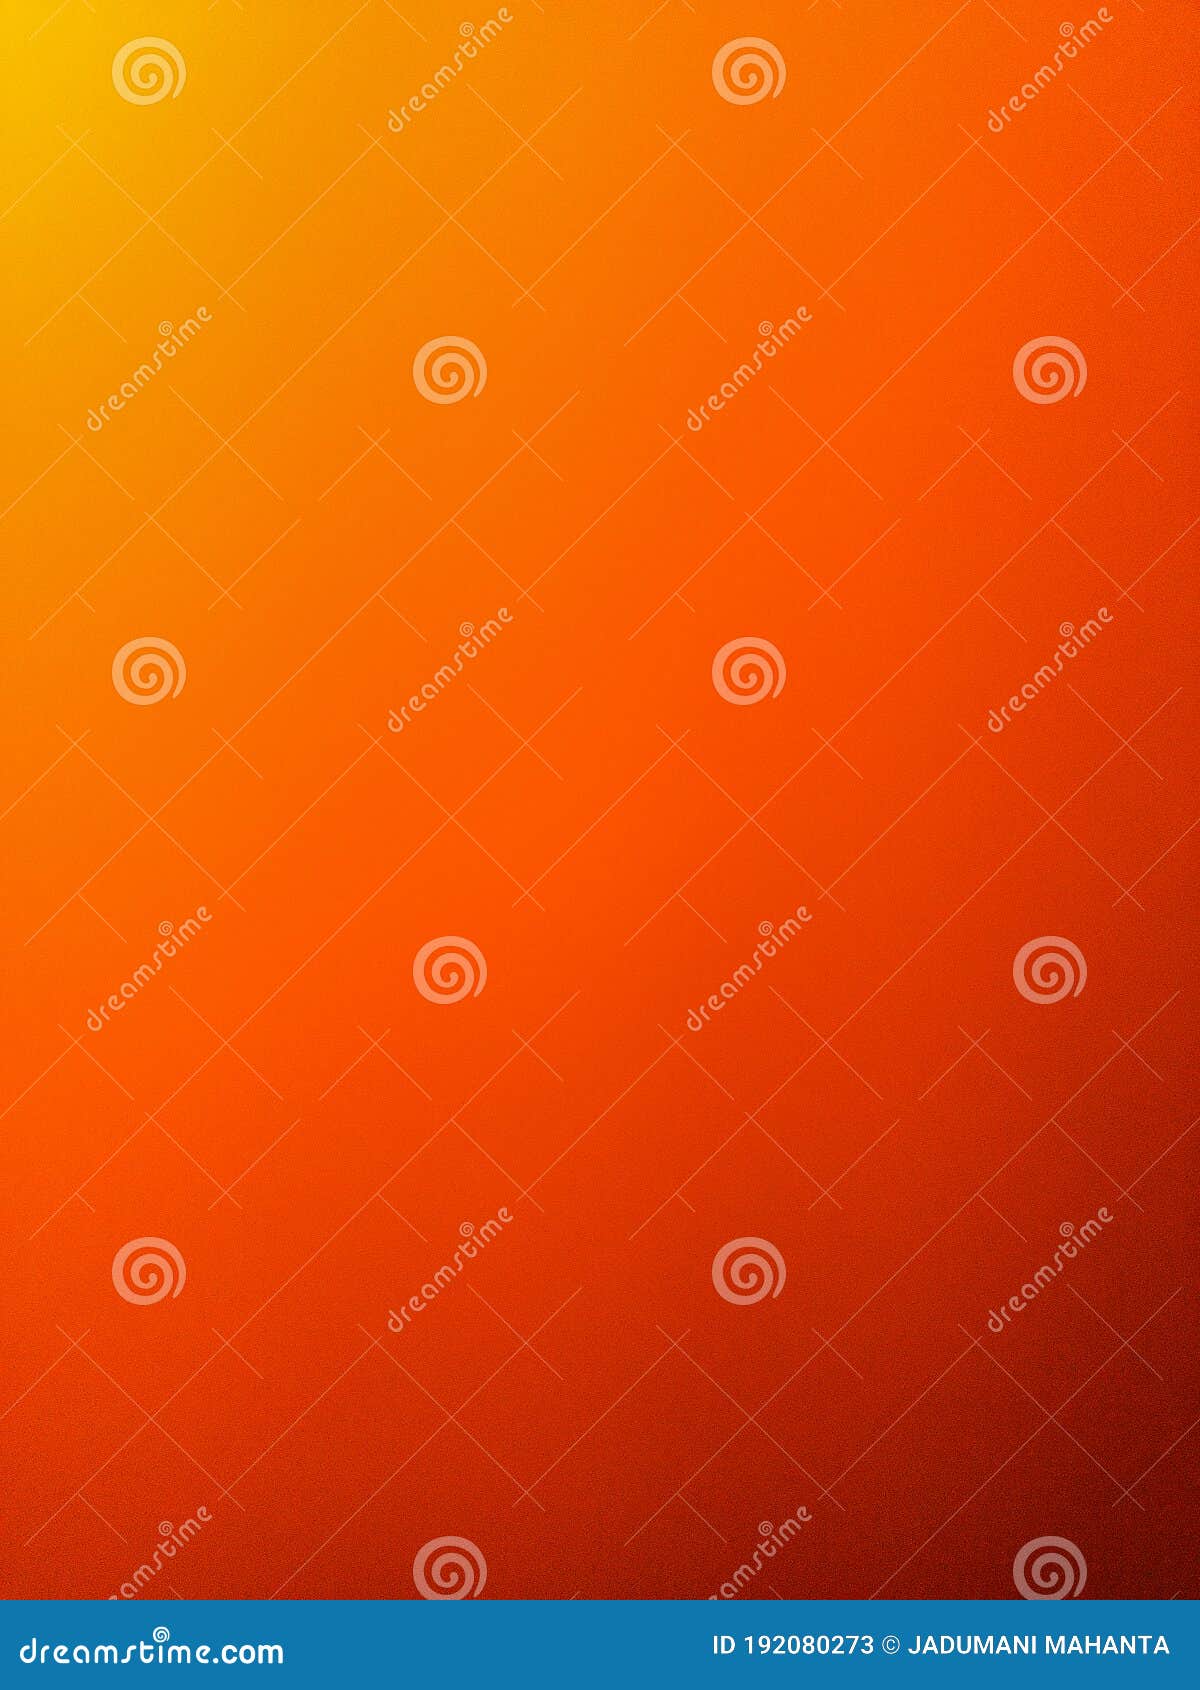 Màu sắc cam và cam đỏ đang trở thành xu hướng thịnh hành trong năm nay! Thật là tuyệt vời khi bạn có thể trang trí màn hình điện thoại của mình bằng những tông màu tươi sáng và đầy năng lượng. Cùng hòa mình vào trào lưu này với những hình nền cam và cam đỏ độc đáo để phát huy cá tính của bạn.